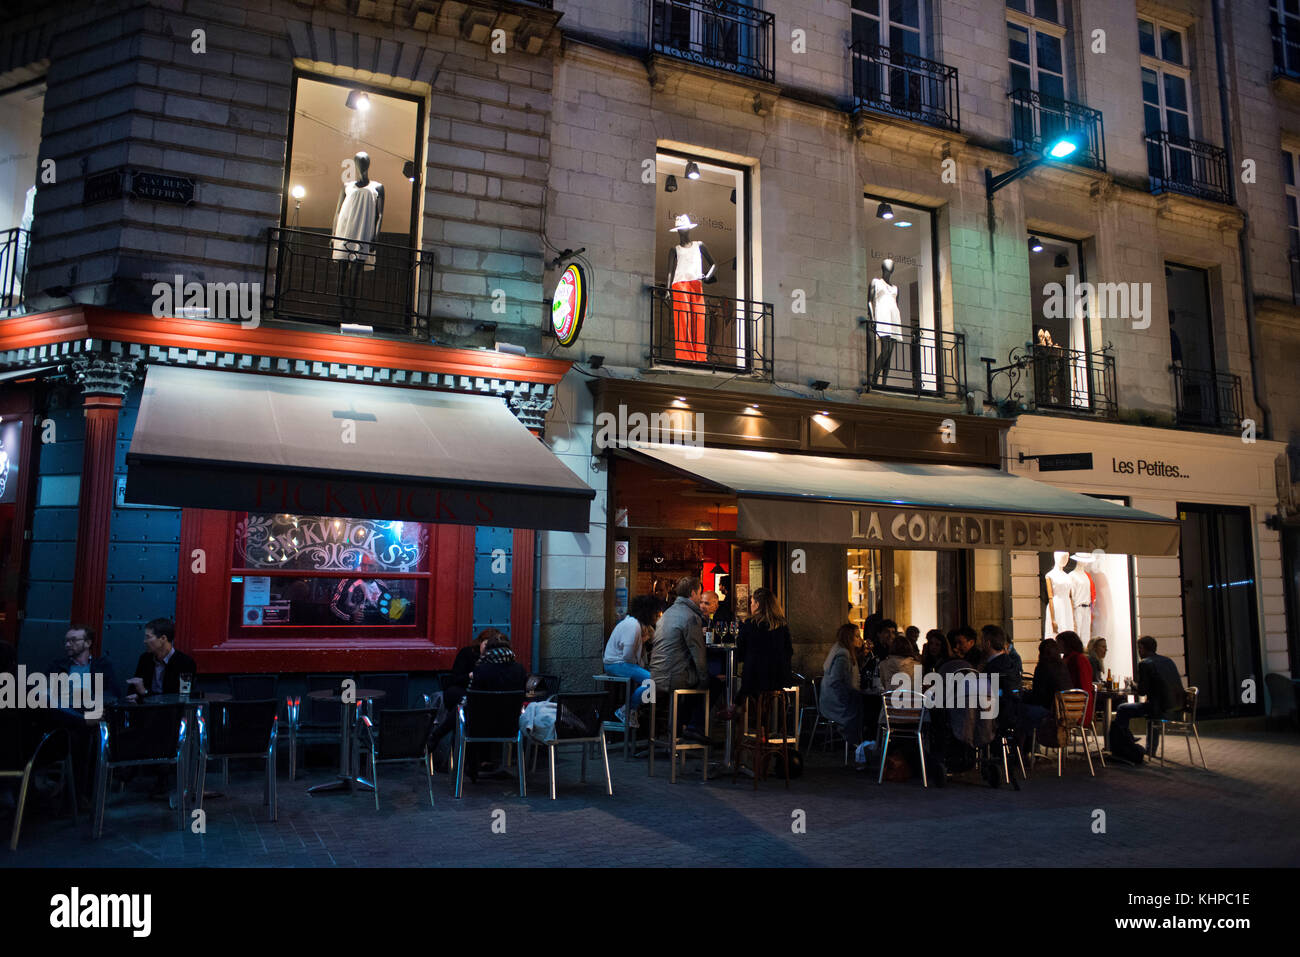 Bares y restaurantes de ambiente nocturno en el casco antiguo de la ciudad de Nantes, Loire Atlantique, Francia. la comedie des vins restaurante. Foto de stock